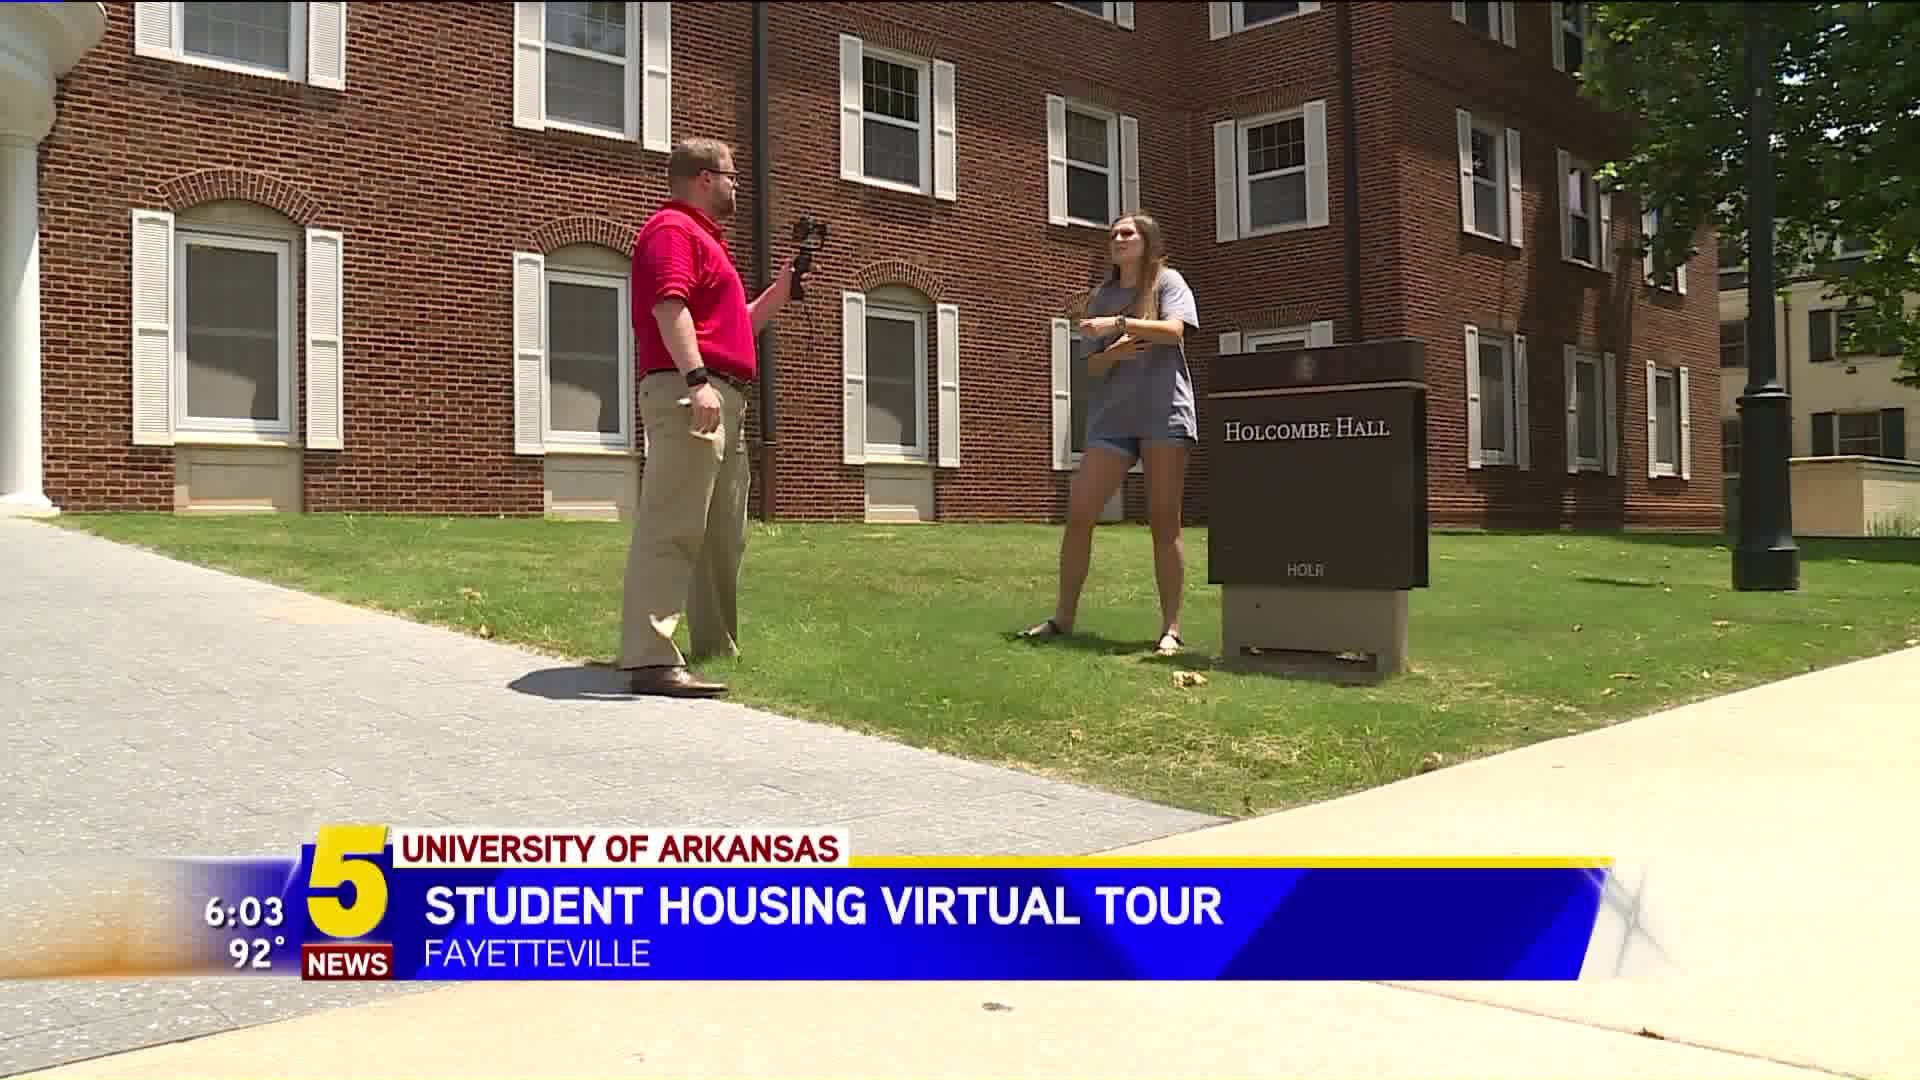 Student Housing Virtual Tour